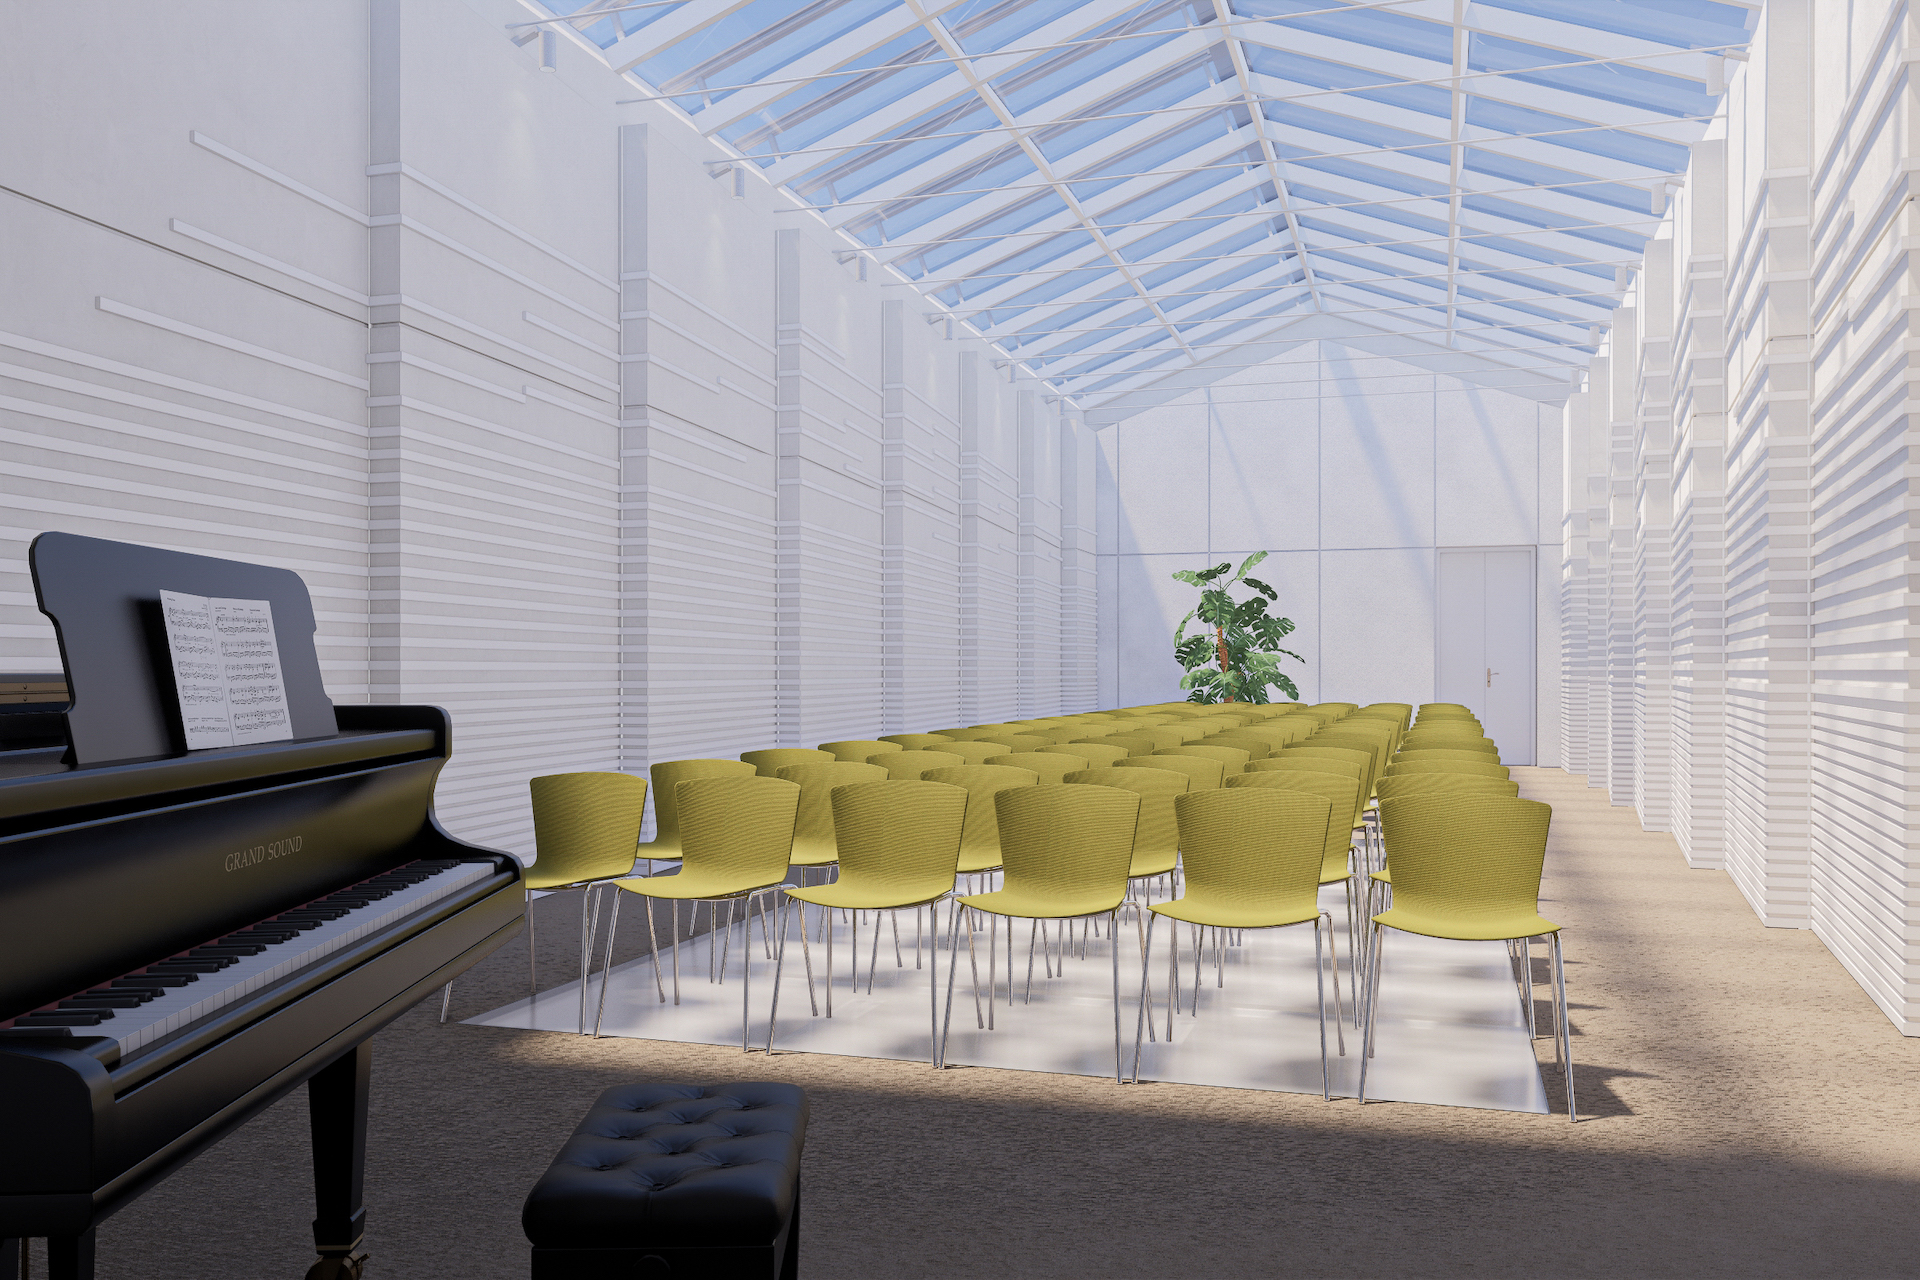 Budúca podoba sály s preskleným stropom i podlahou